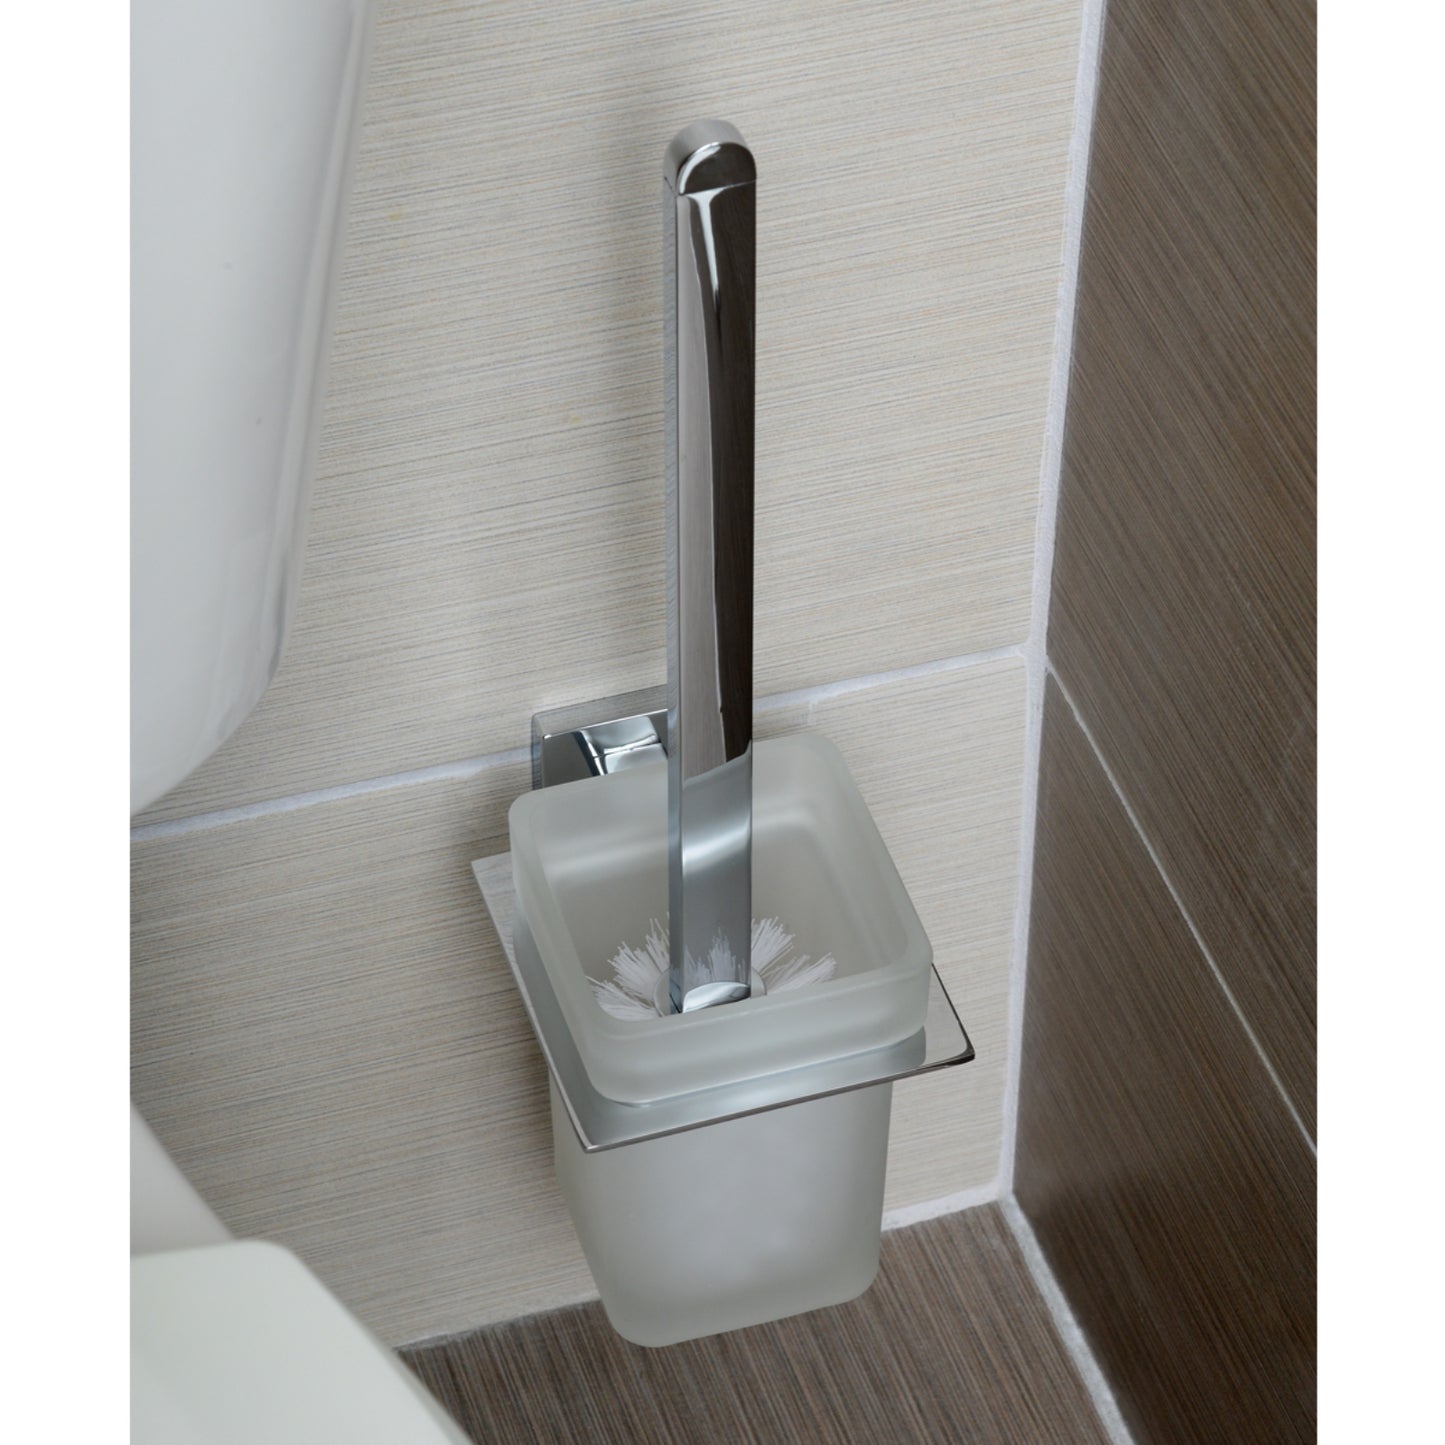 South Main Hardware Euro Toilet Brush Holder - Polished Chrome